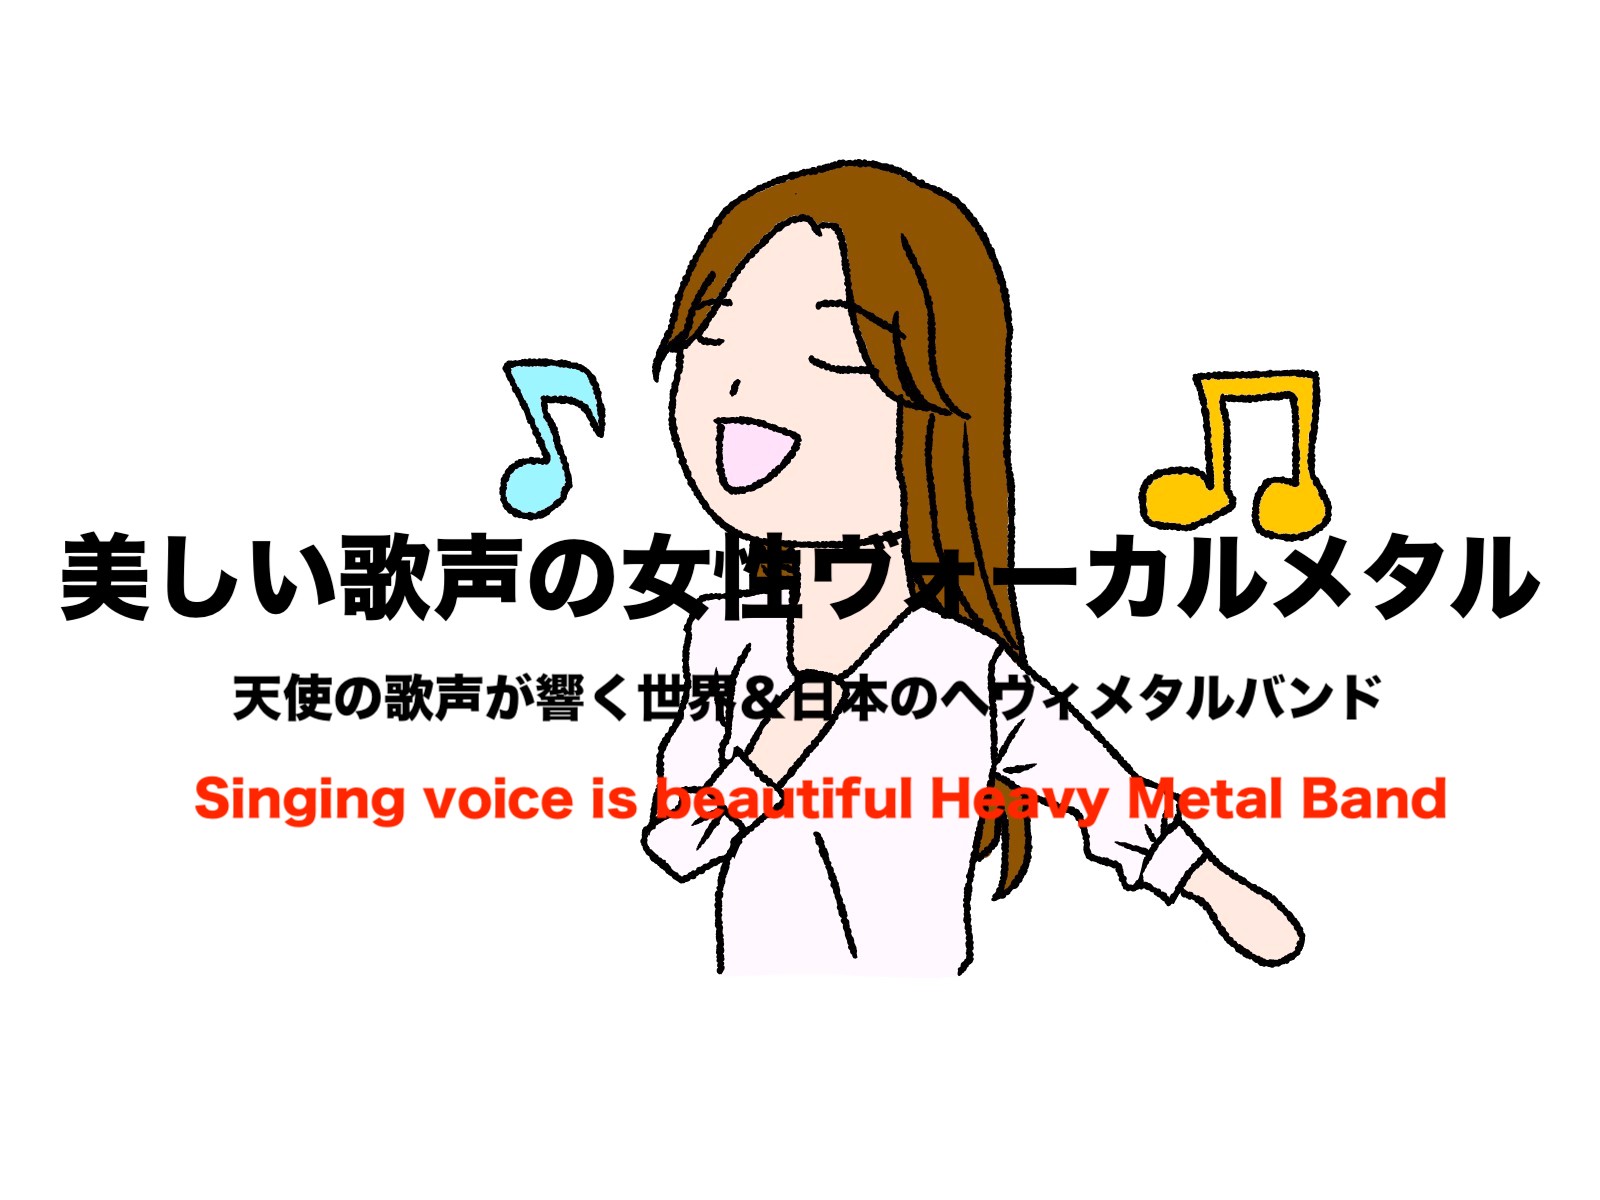 美しい歌声が響く女性ヴォーカルのヘヴィメタル 世界 日本おすすめバンド８選 フリーランスな笑い声